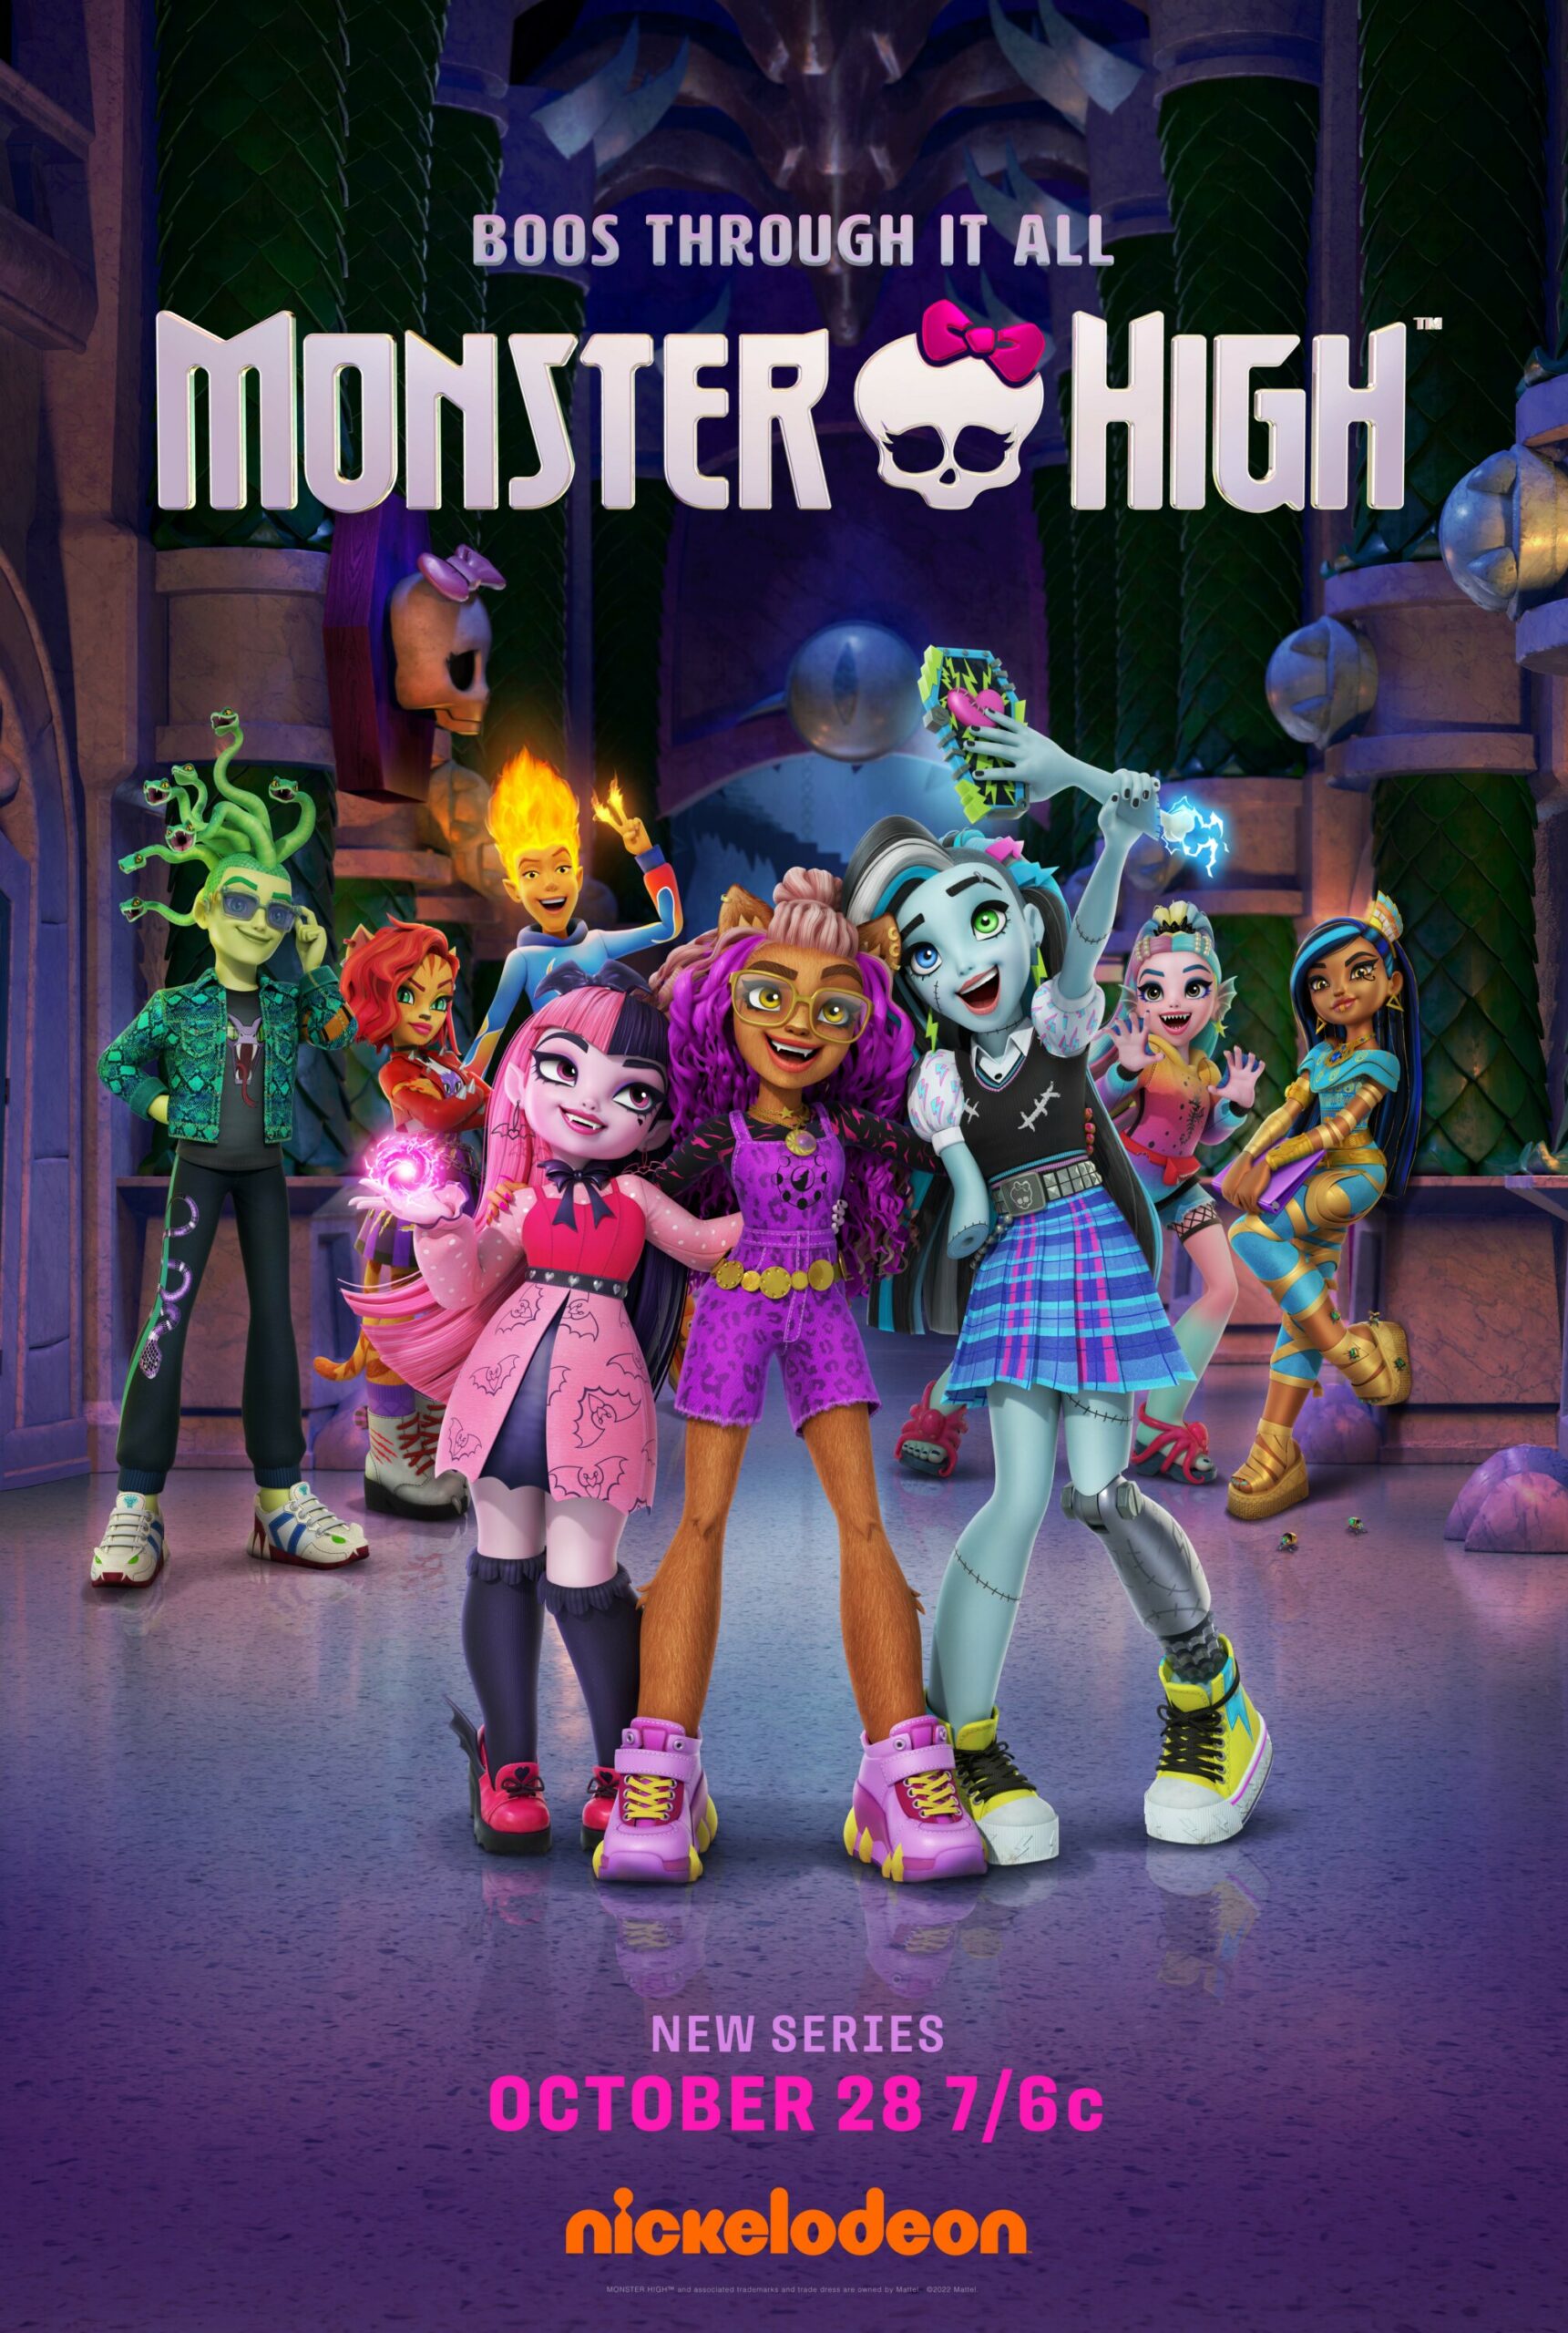 Monster High - Heath Burns, Monster High is an American fas…